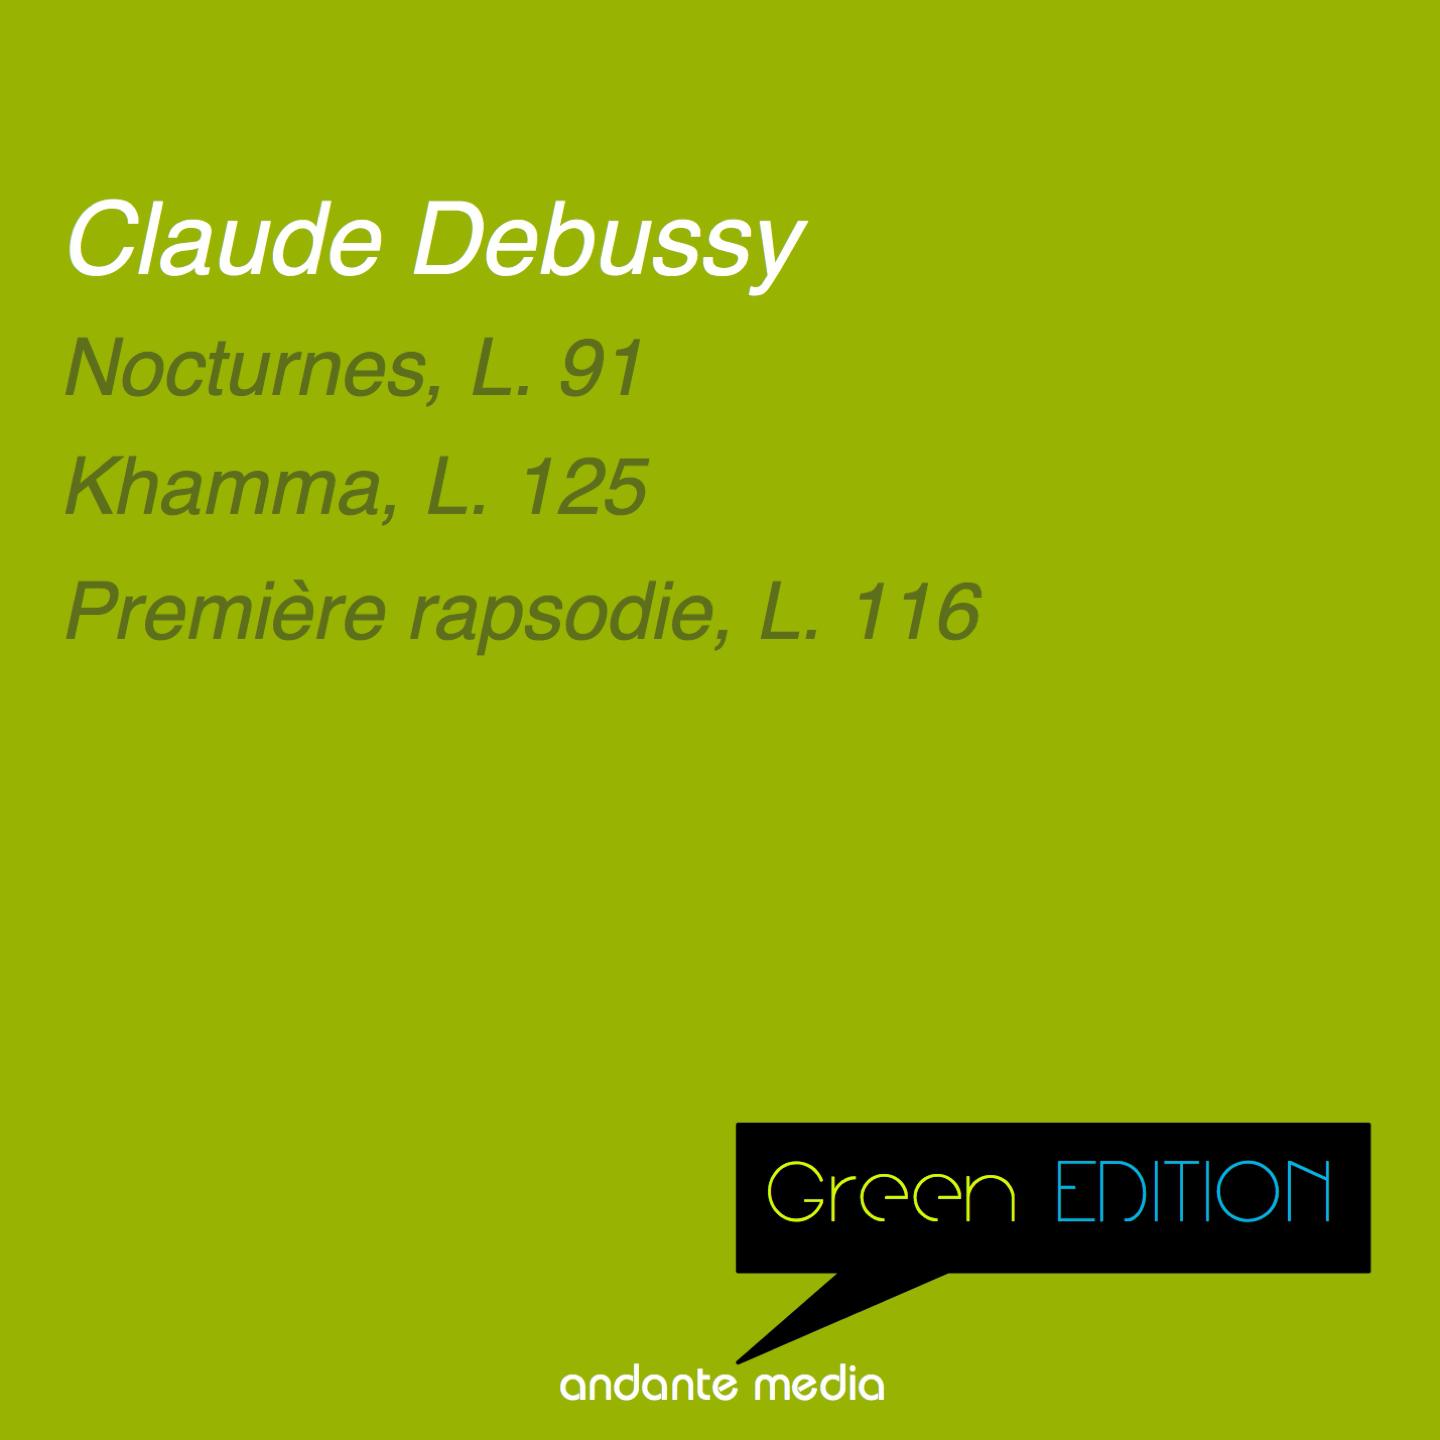 Green Edition  Debussy: Nocturnes, L. 91  Premie re rapsodie, L. 116